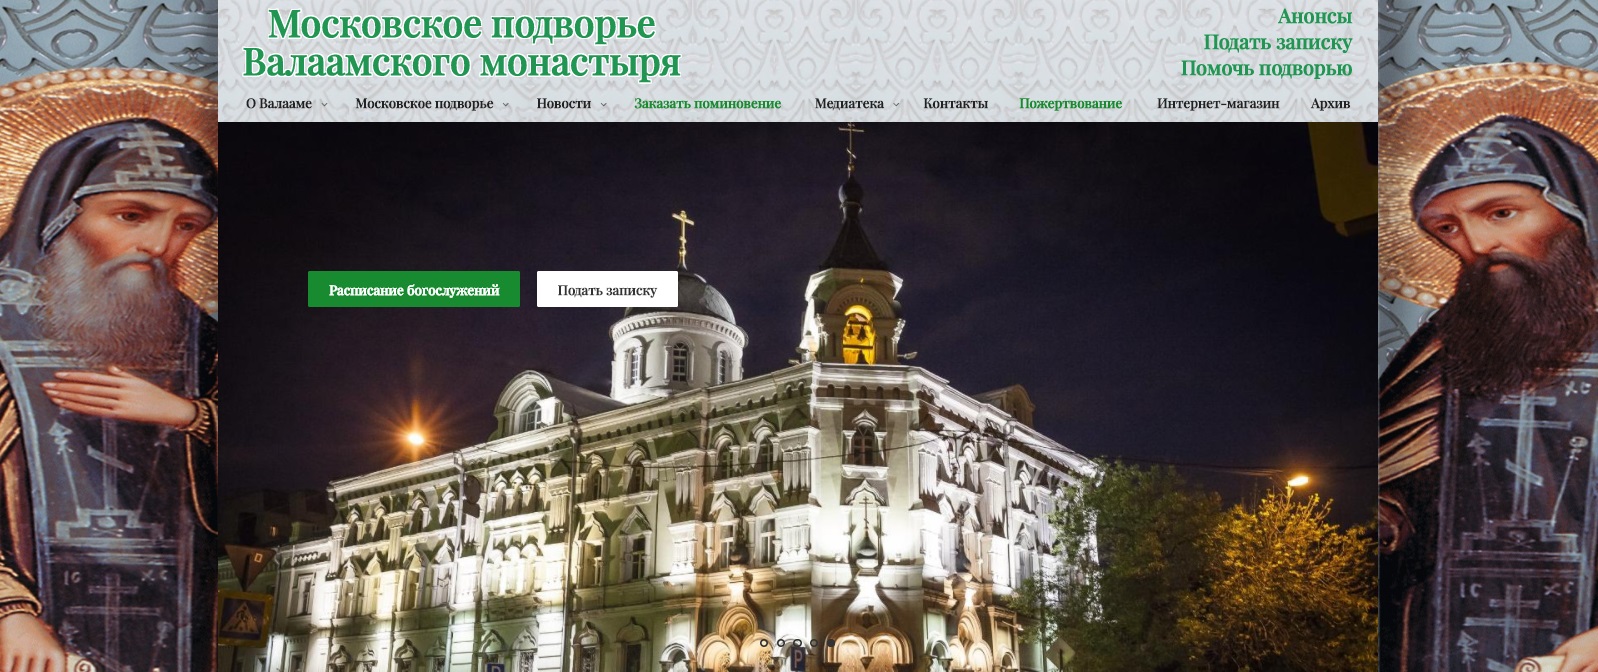 Московское подворье монастыря обновило официальный сайт